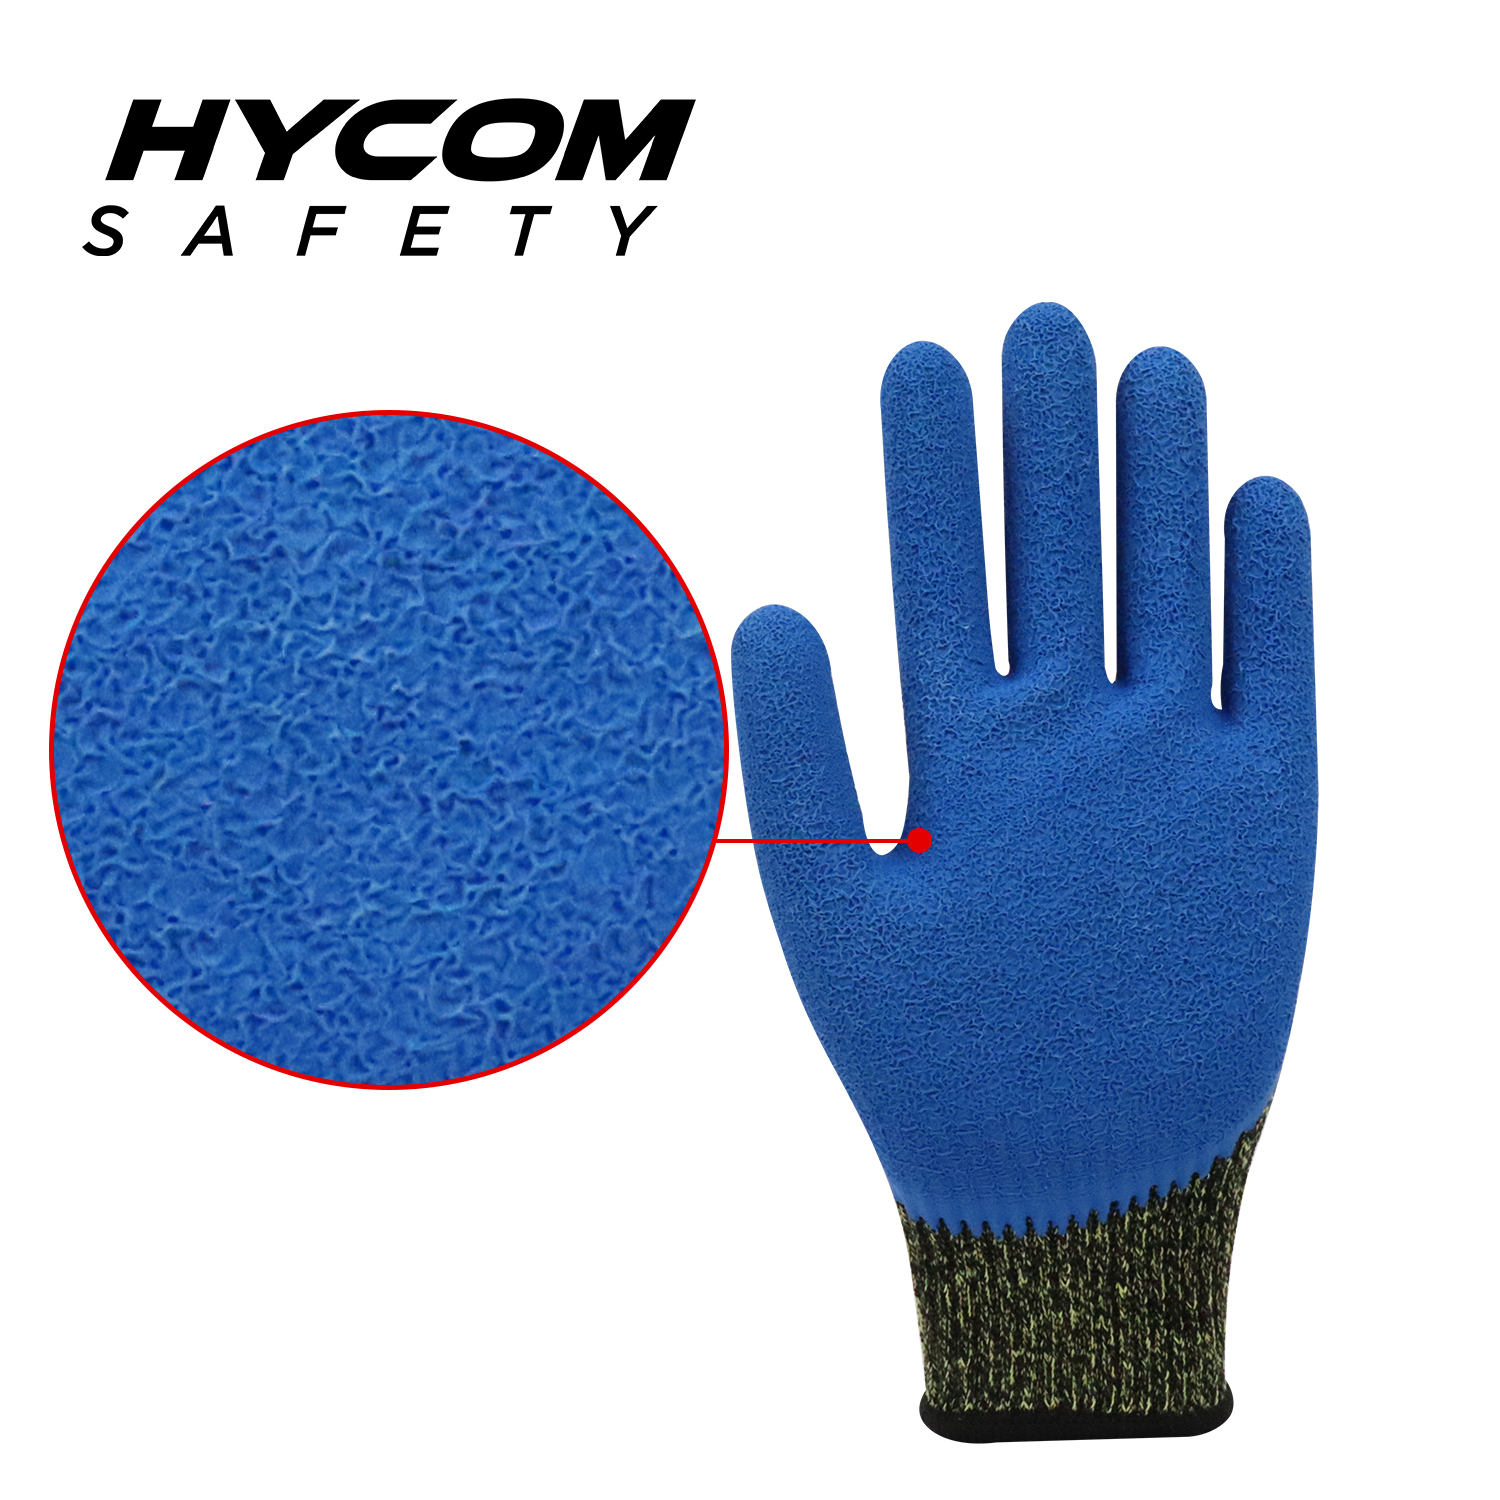 HYCOM Atemgeschnittener 10G ANSI 4 Aramid-Schnittschutzhandschuh mit Latex-Arbeitshandschuhen